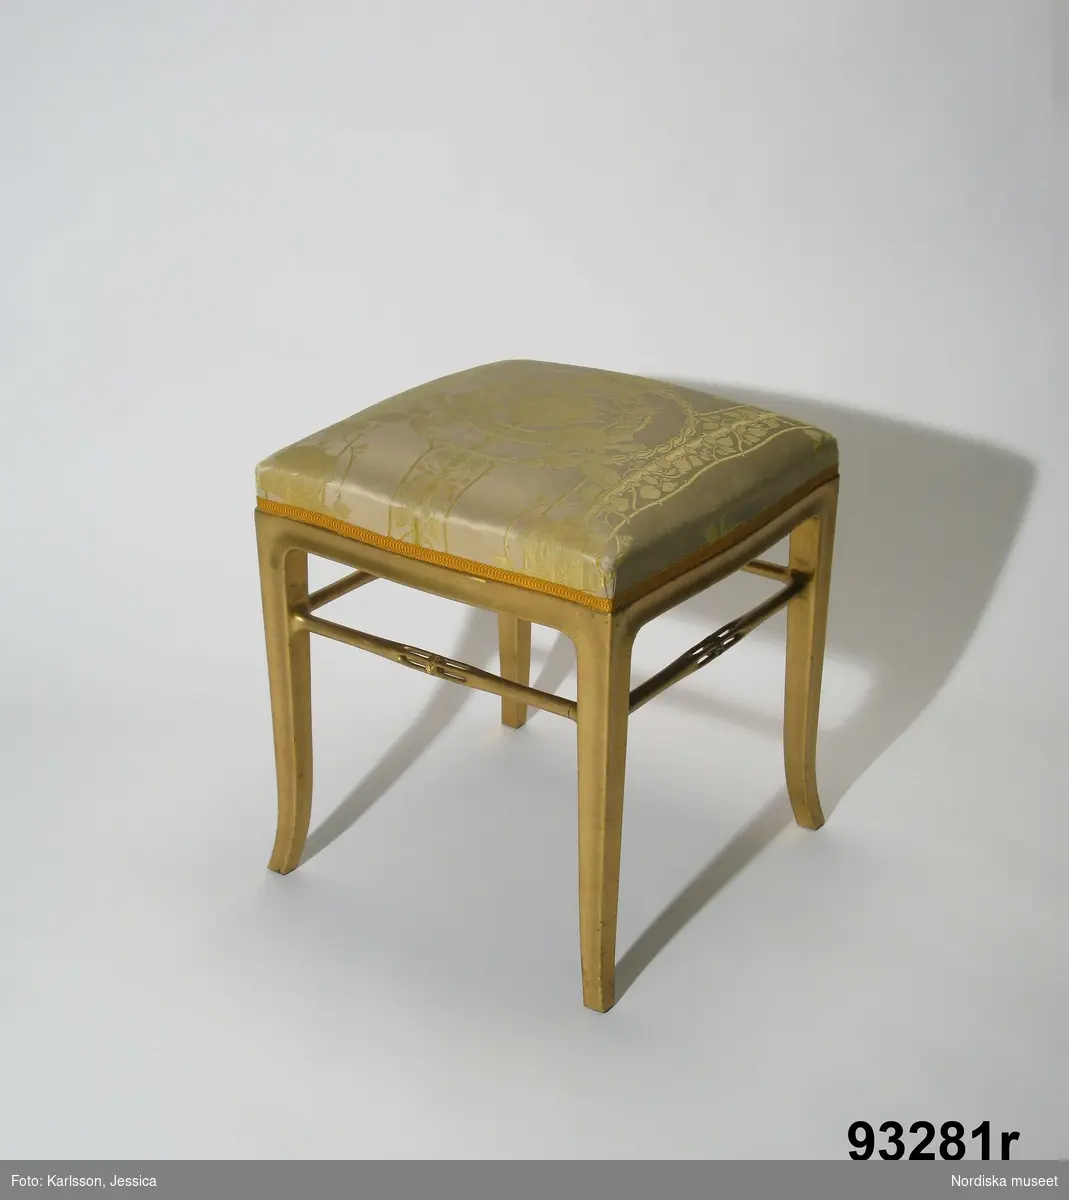 Huvudliggaren:
"Möbel, 24 pjäser, utf. efter ritning av arkitekten F.[Ferdinand] Boberg för utställningen i Paris 1900. a-b två bord, c en soffa, d-k åtta länstolar, l-q sex små stolar, r-u fyra taburetter, v ett skåp, w en svänghylla och x en spegel. 
Ink. 19/7 1902 Holmberg, J. E, herr, Sthlm." 